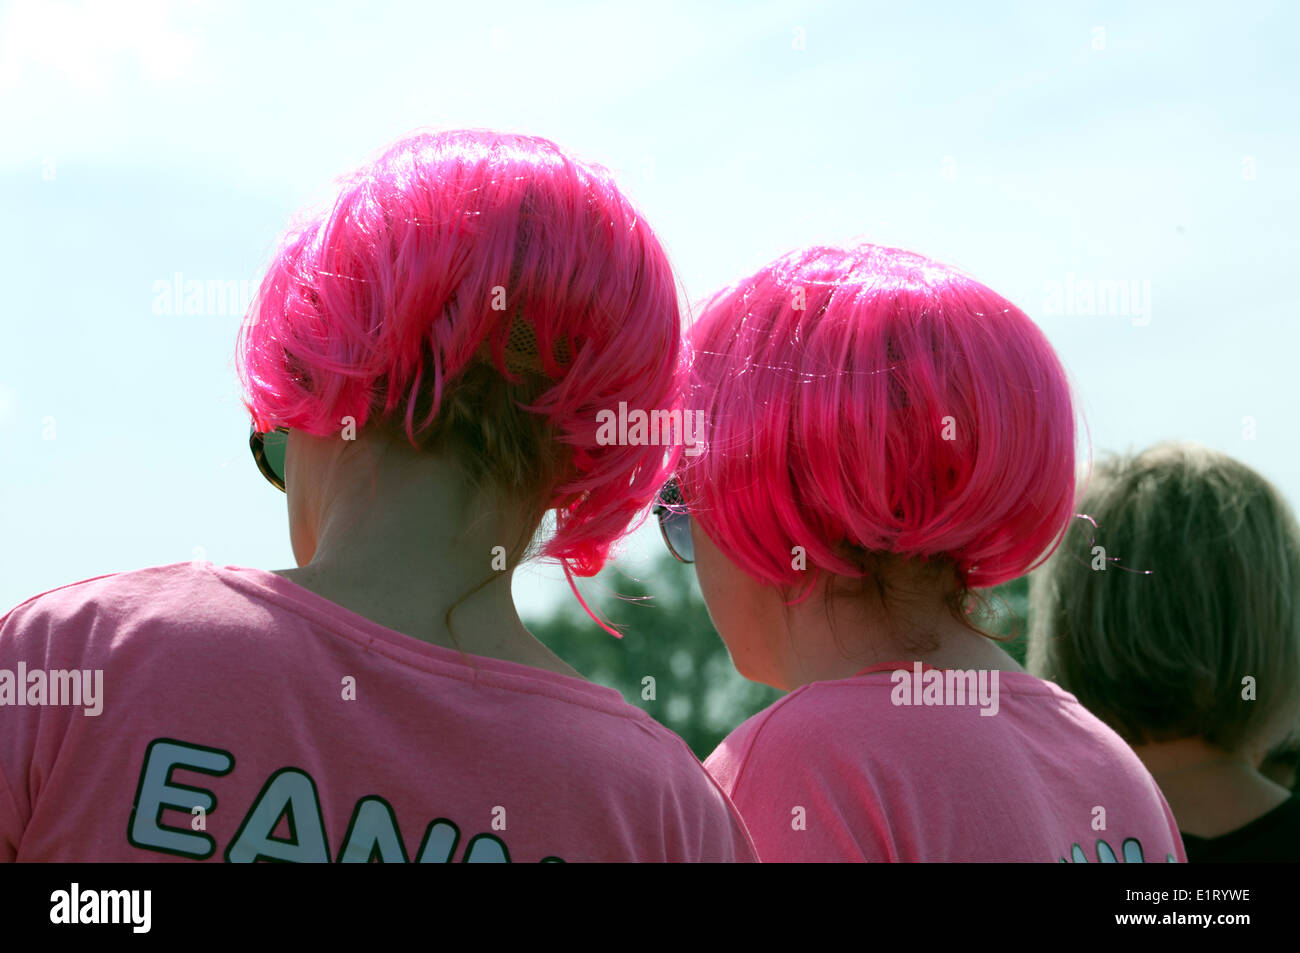 La race pour la vie, le Cancer Research UK Charity Event, les femmes portant des perruques rose. Banque D'Images